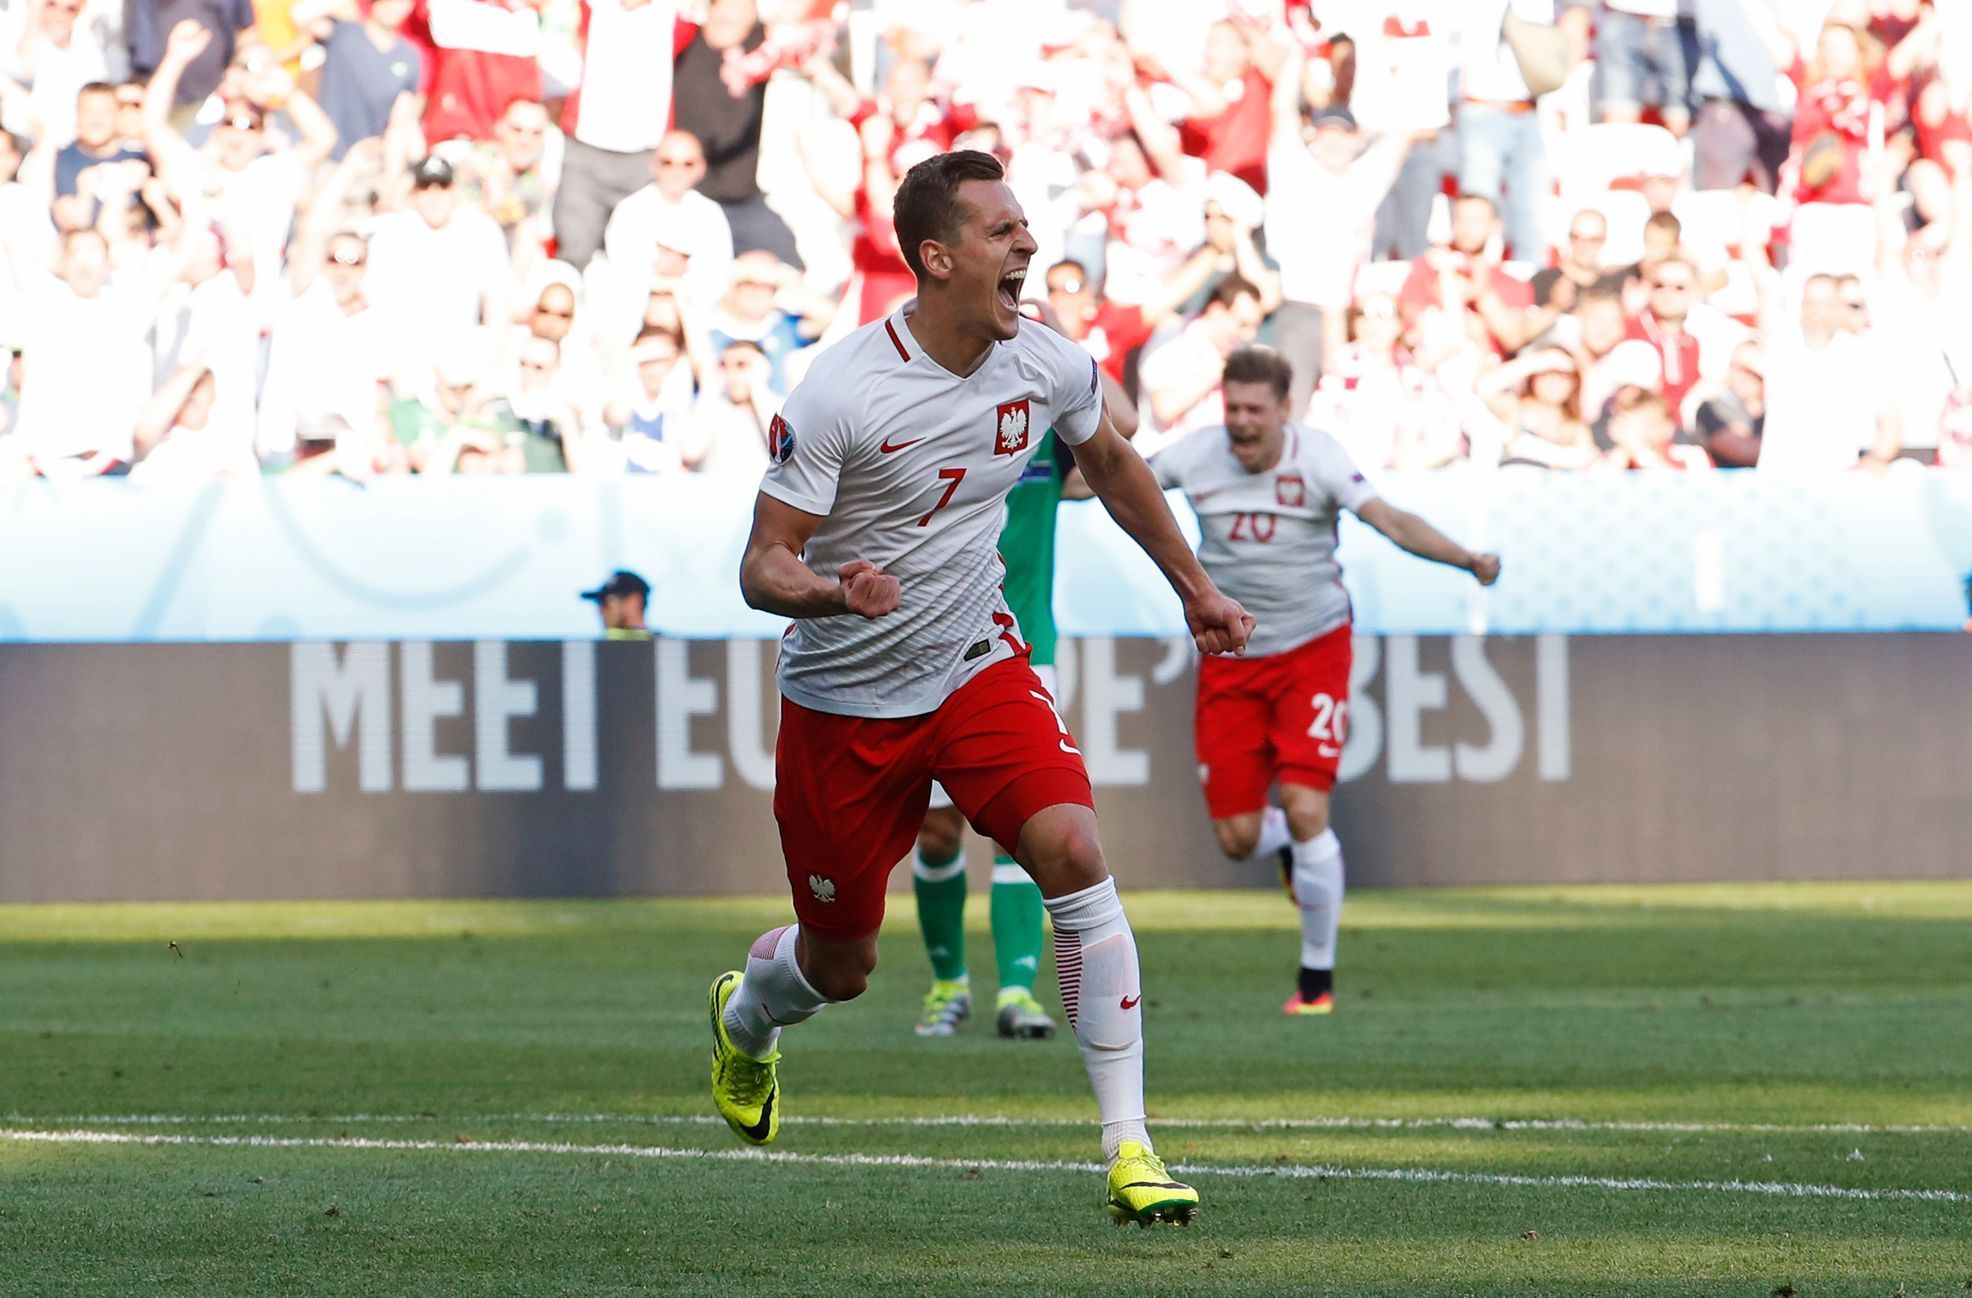 Euro 2016, Polsko-Severní Irsko: Arkadiusz Milik slaví gól na 1:0